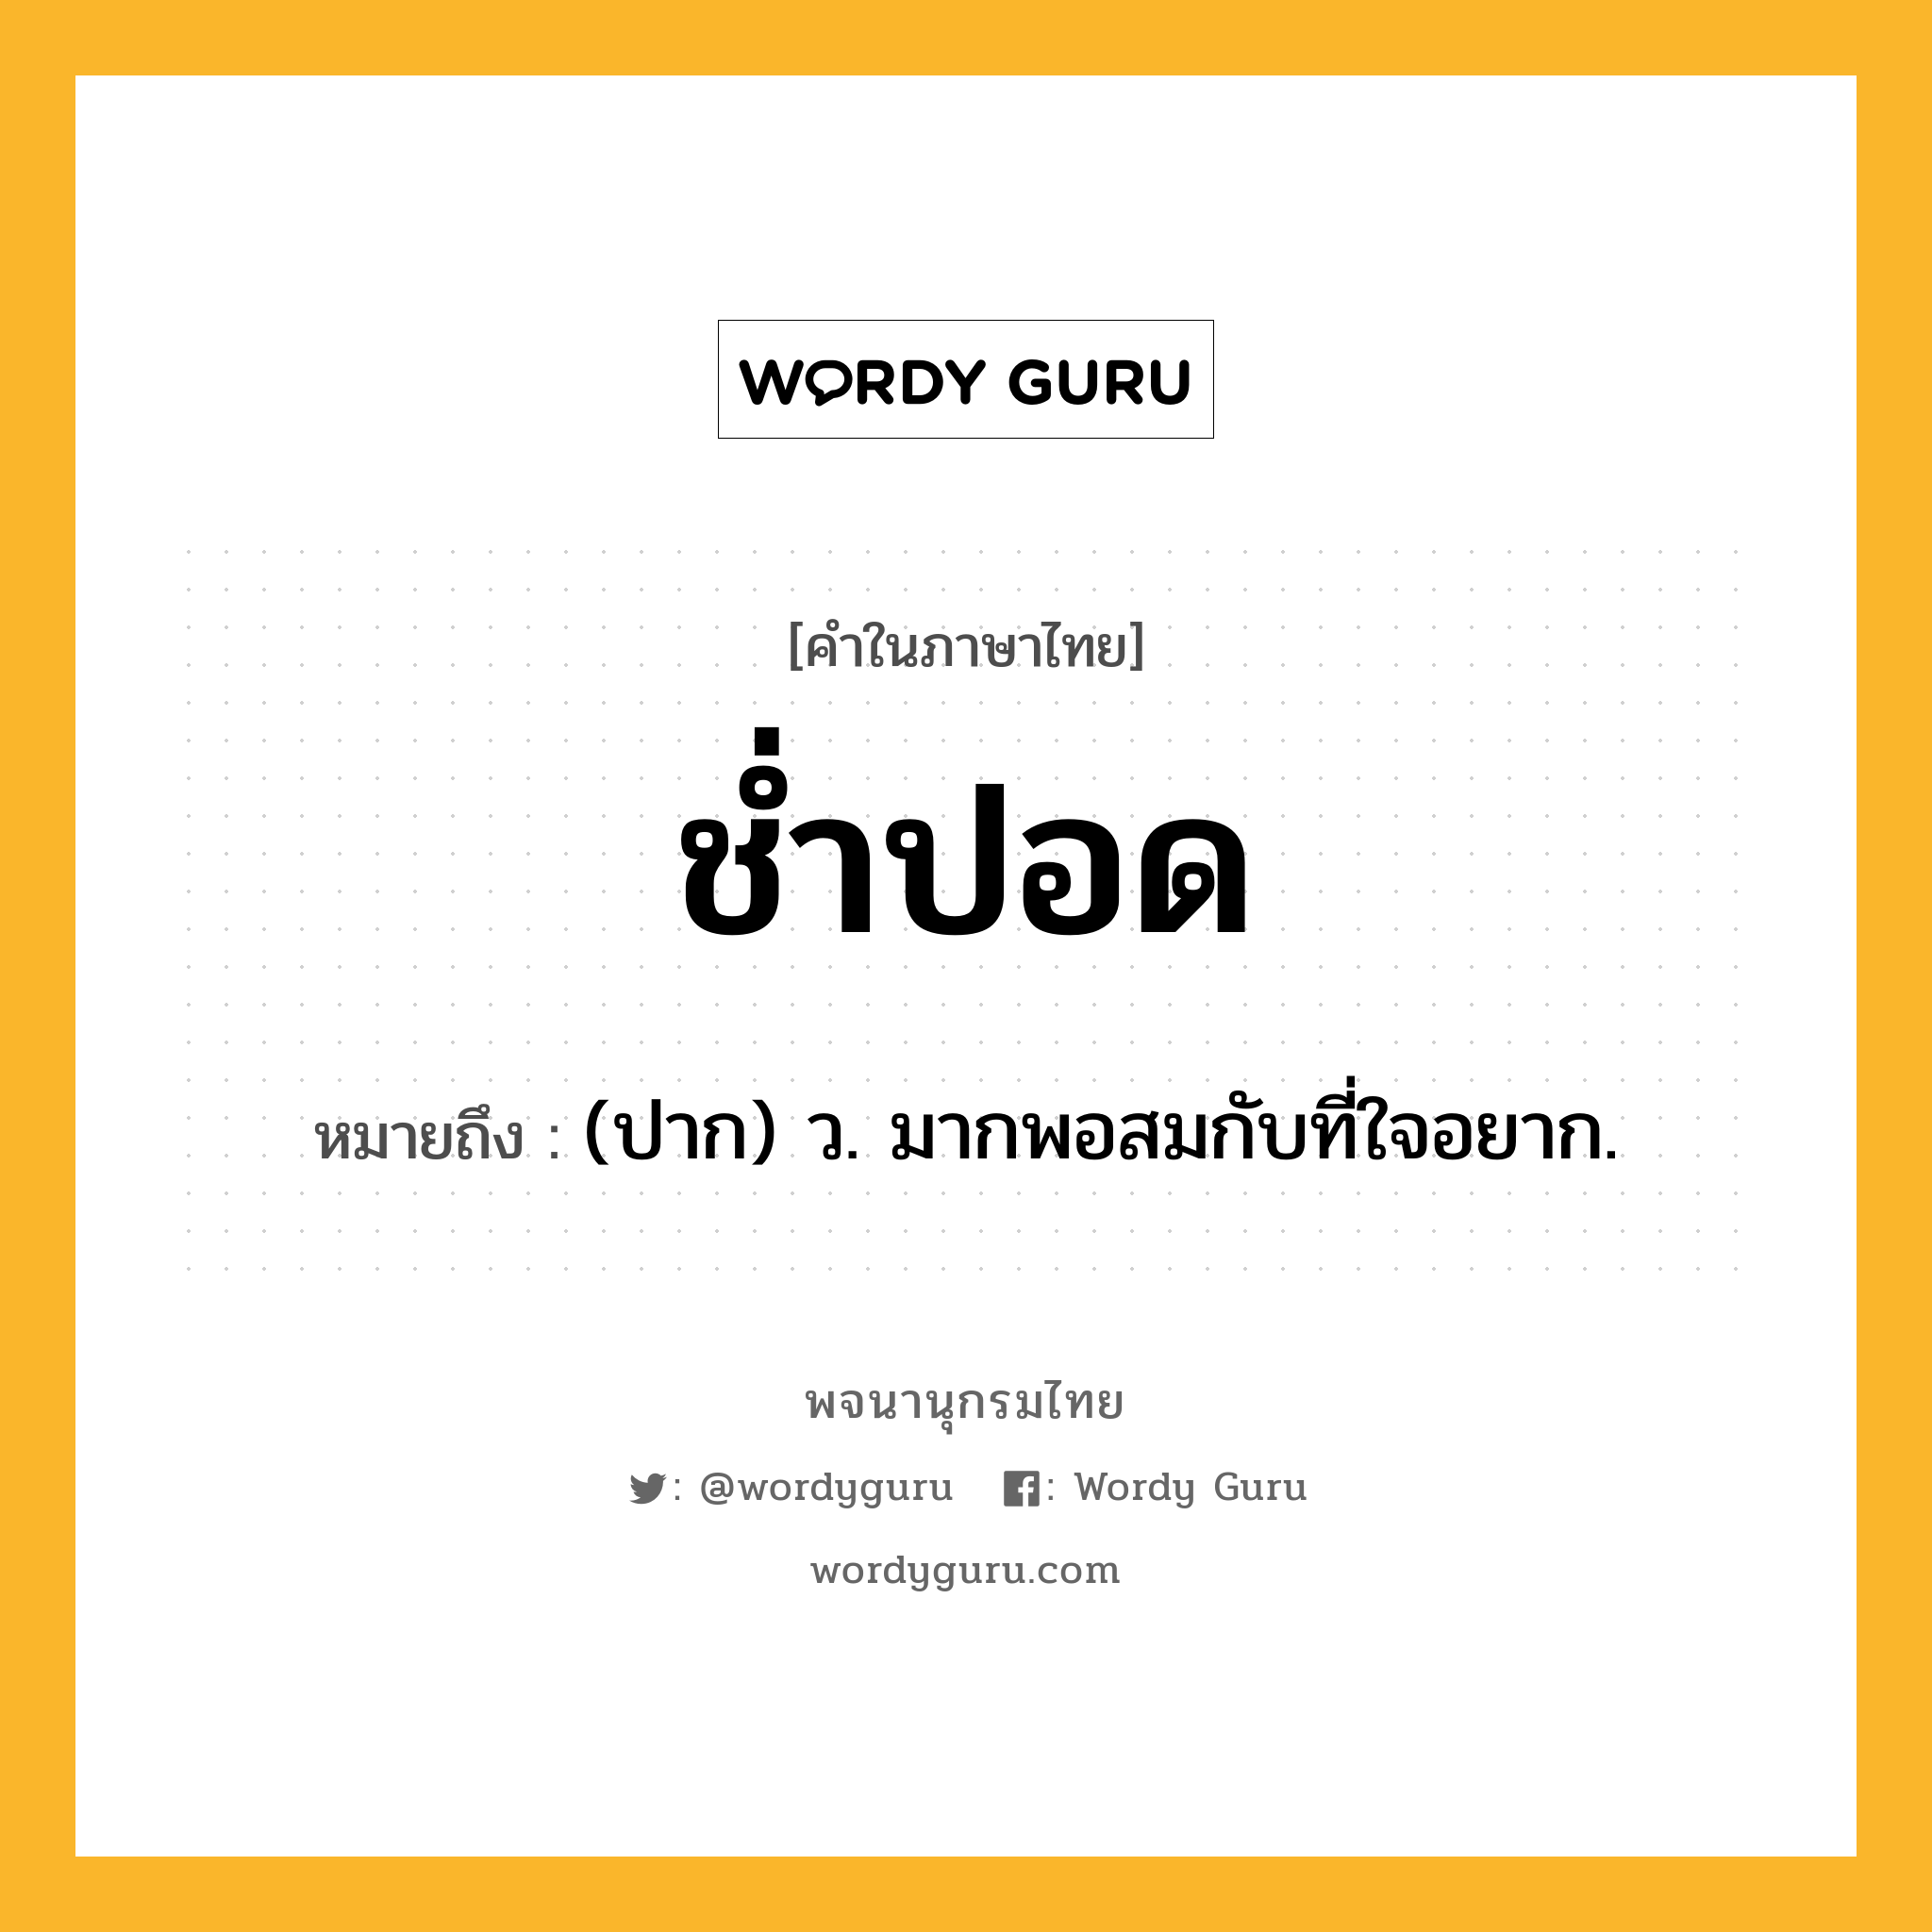 ช่ำปอด ความหมาย หมายถึงอะไร?, คำในภาษาไทย ช่ำปอด หมายถึง (ปาก) ว. มากพอสมกับที่ใจอยาก.